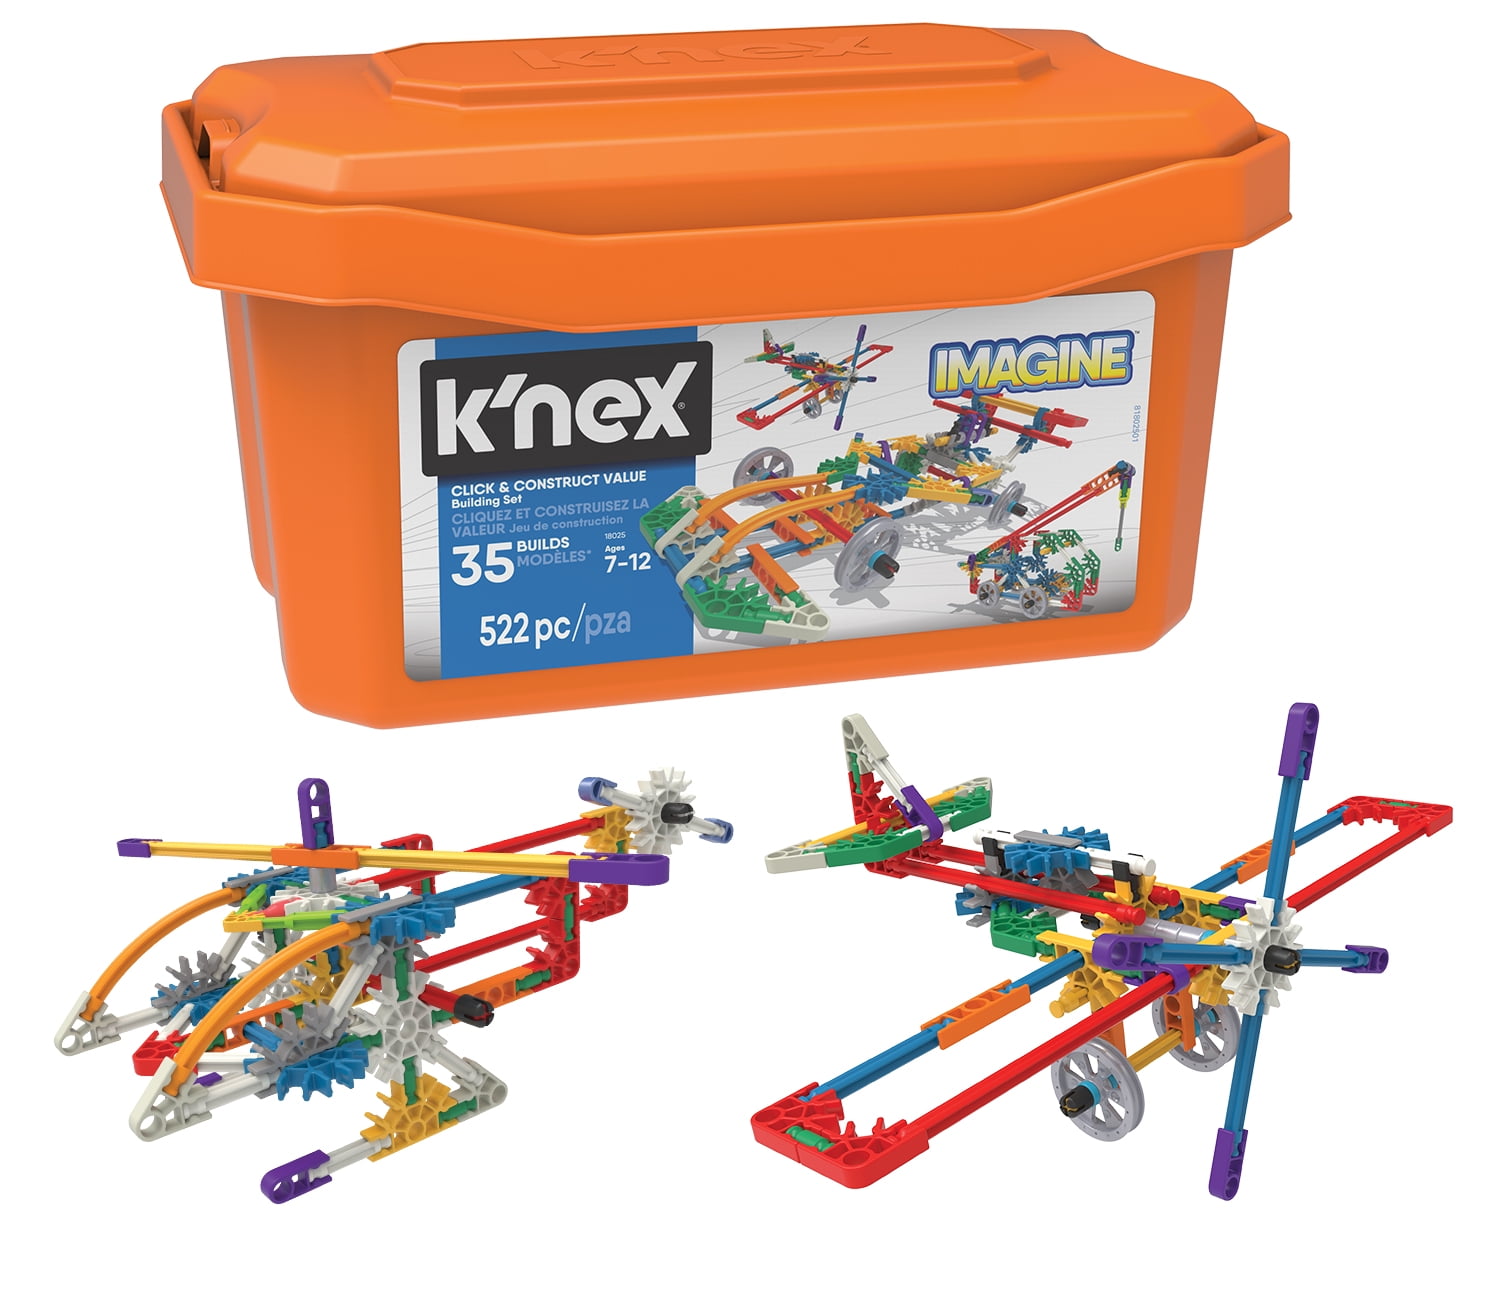 K'NEX Imagine - Click & Construct Value Building Set - 35 Models - Creative  Building Toy - Walmart.com